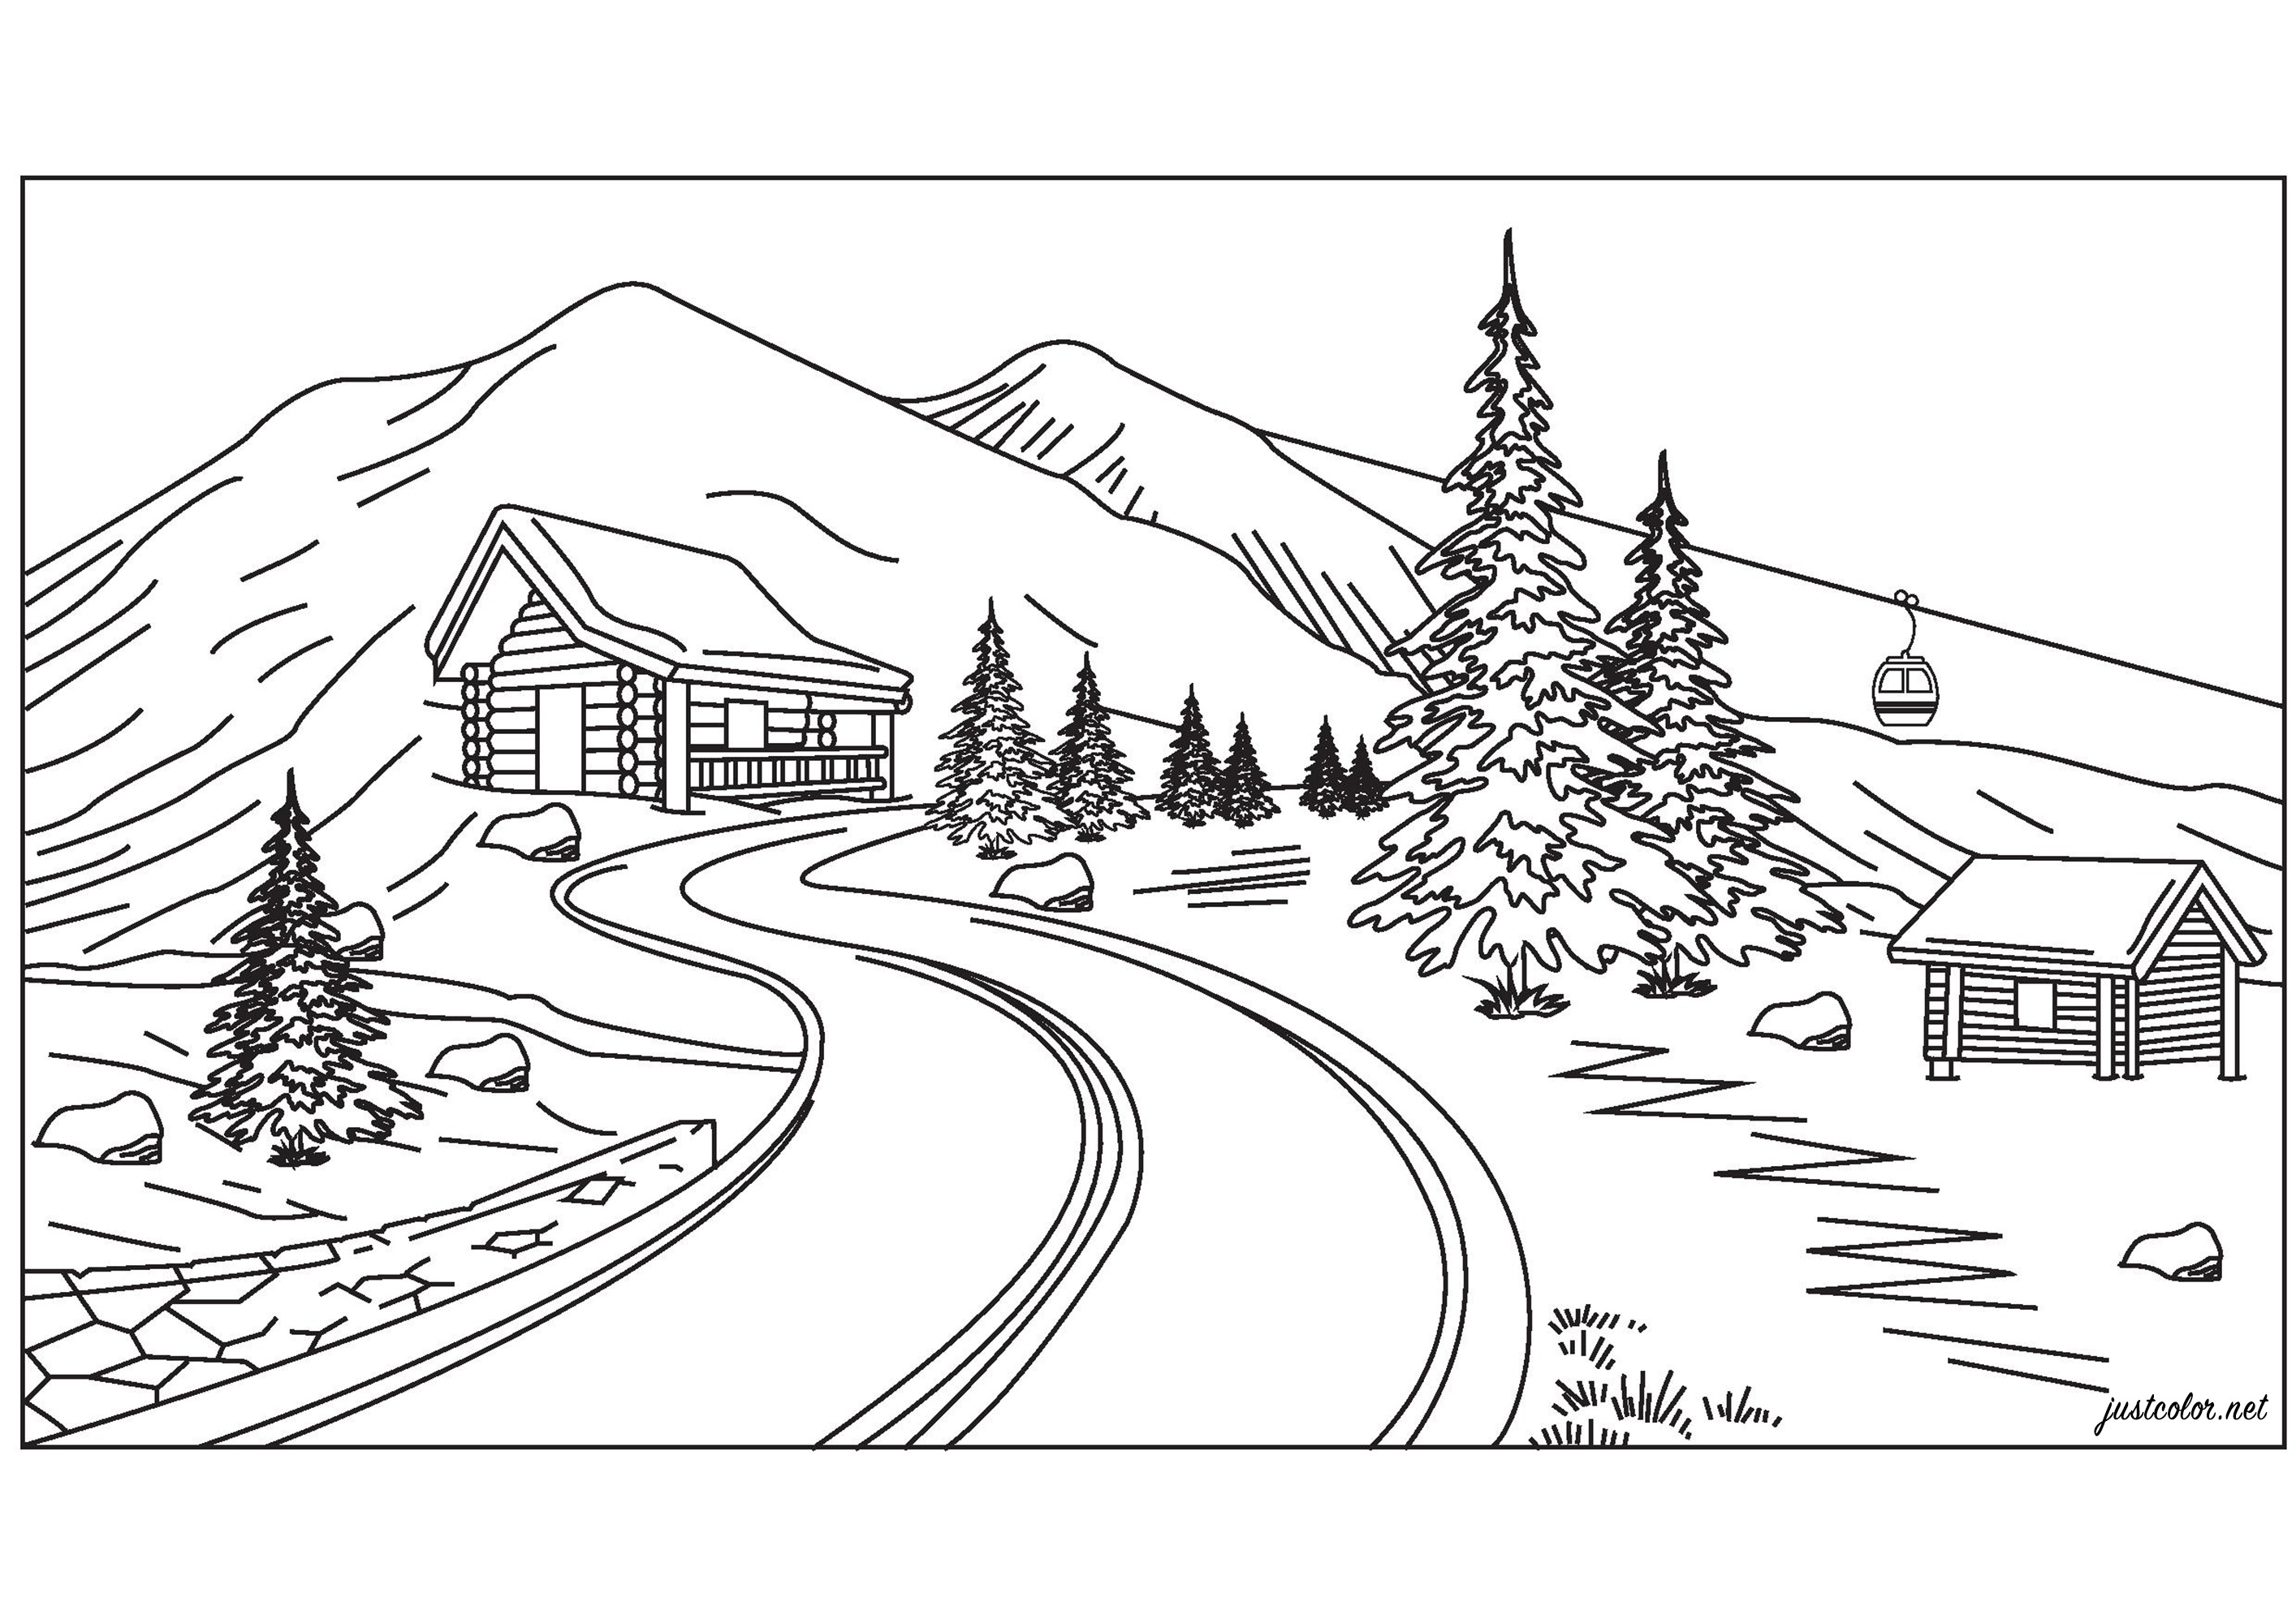 Paisagem de alta montanha com um belo chalé, abetos, teleféricos e belas montanhas nevadas, Artista : Pierre C